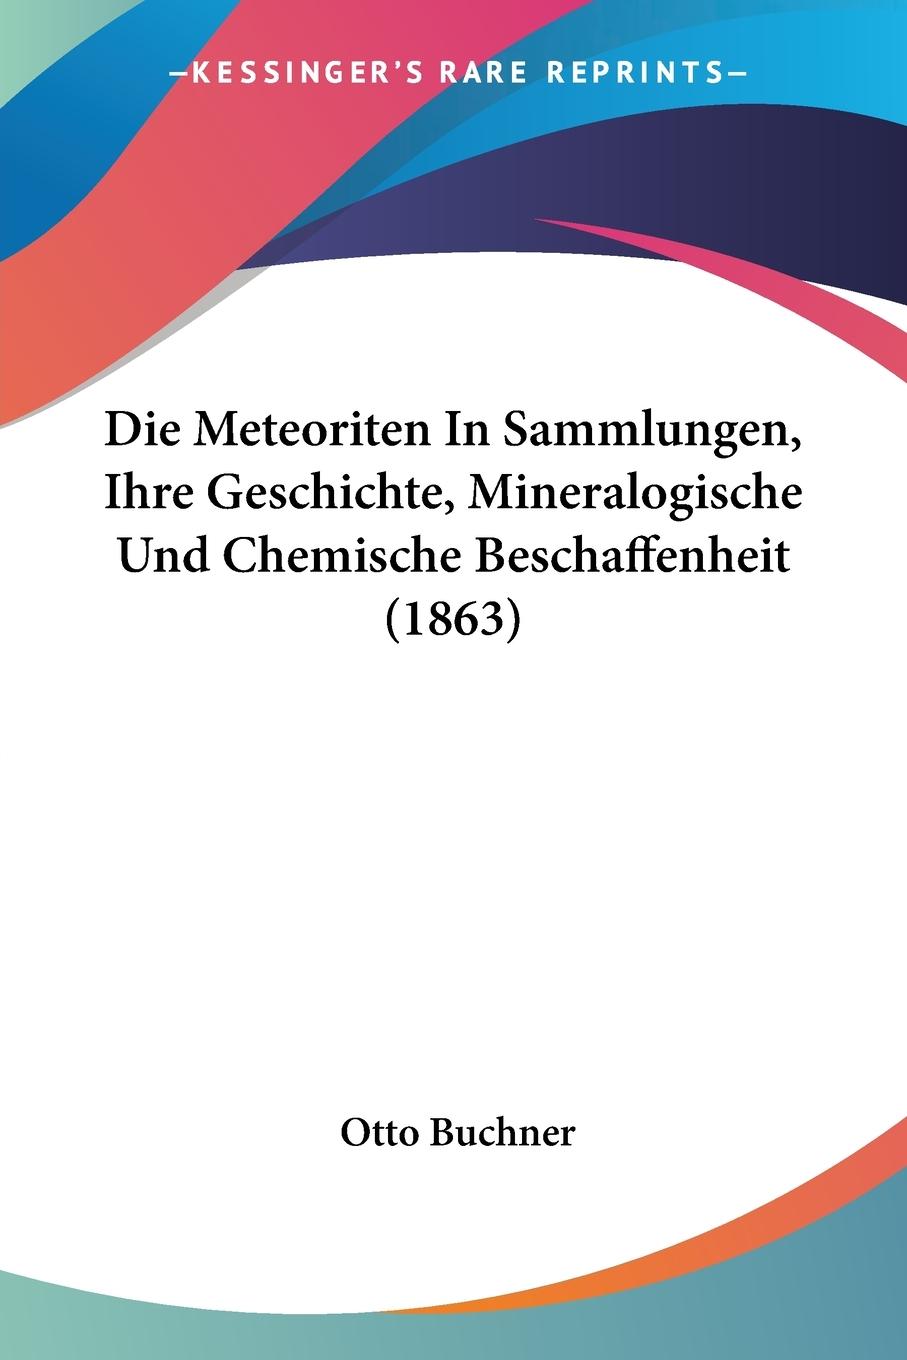 Die Meteoriten In Sammlungen, Ihre Geschichte, Mineralogische Und Chemische Beschaffenheit (1863) - Buchner, Otto